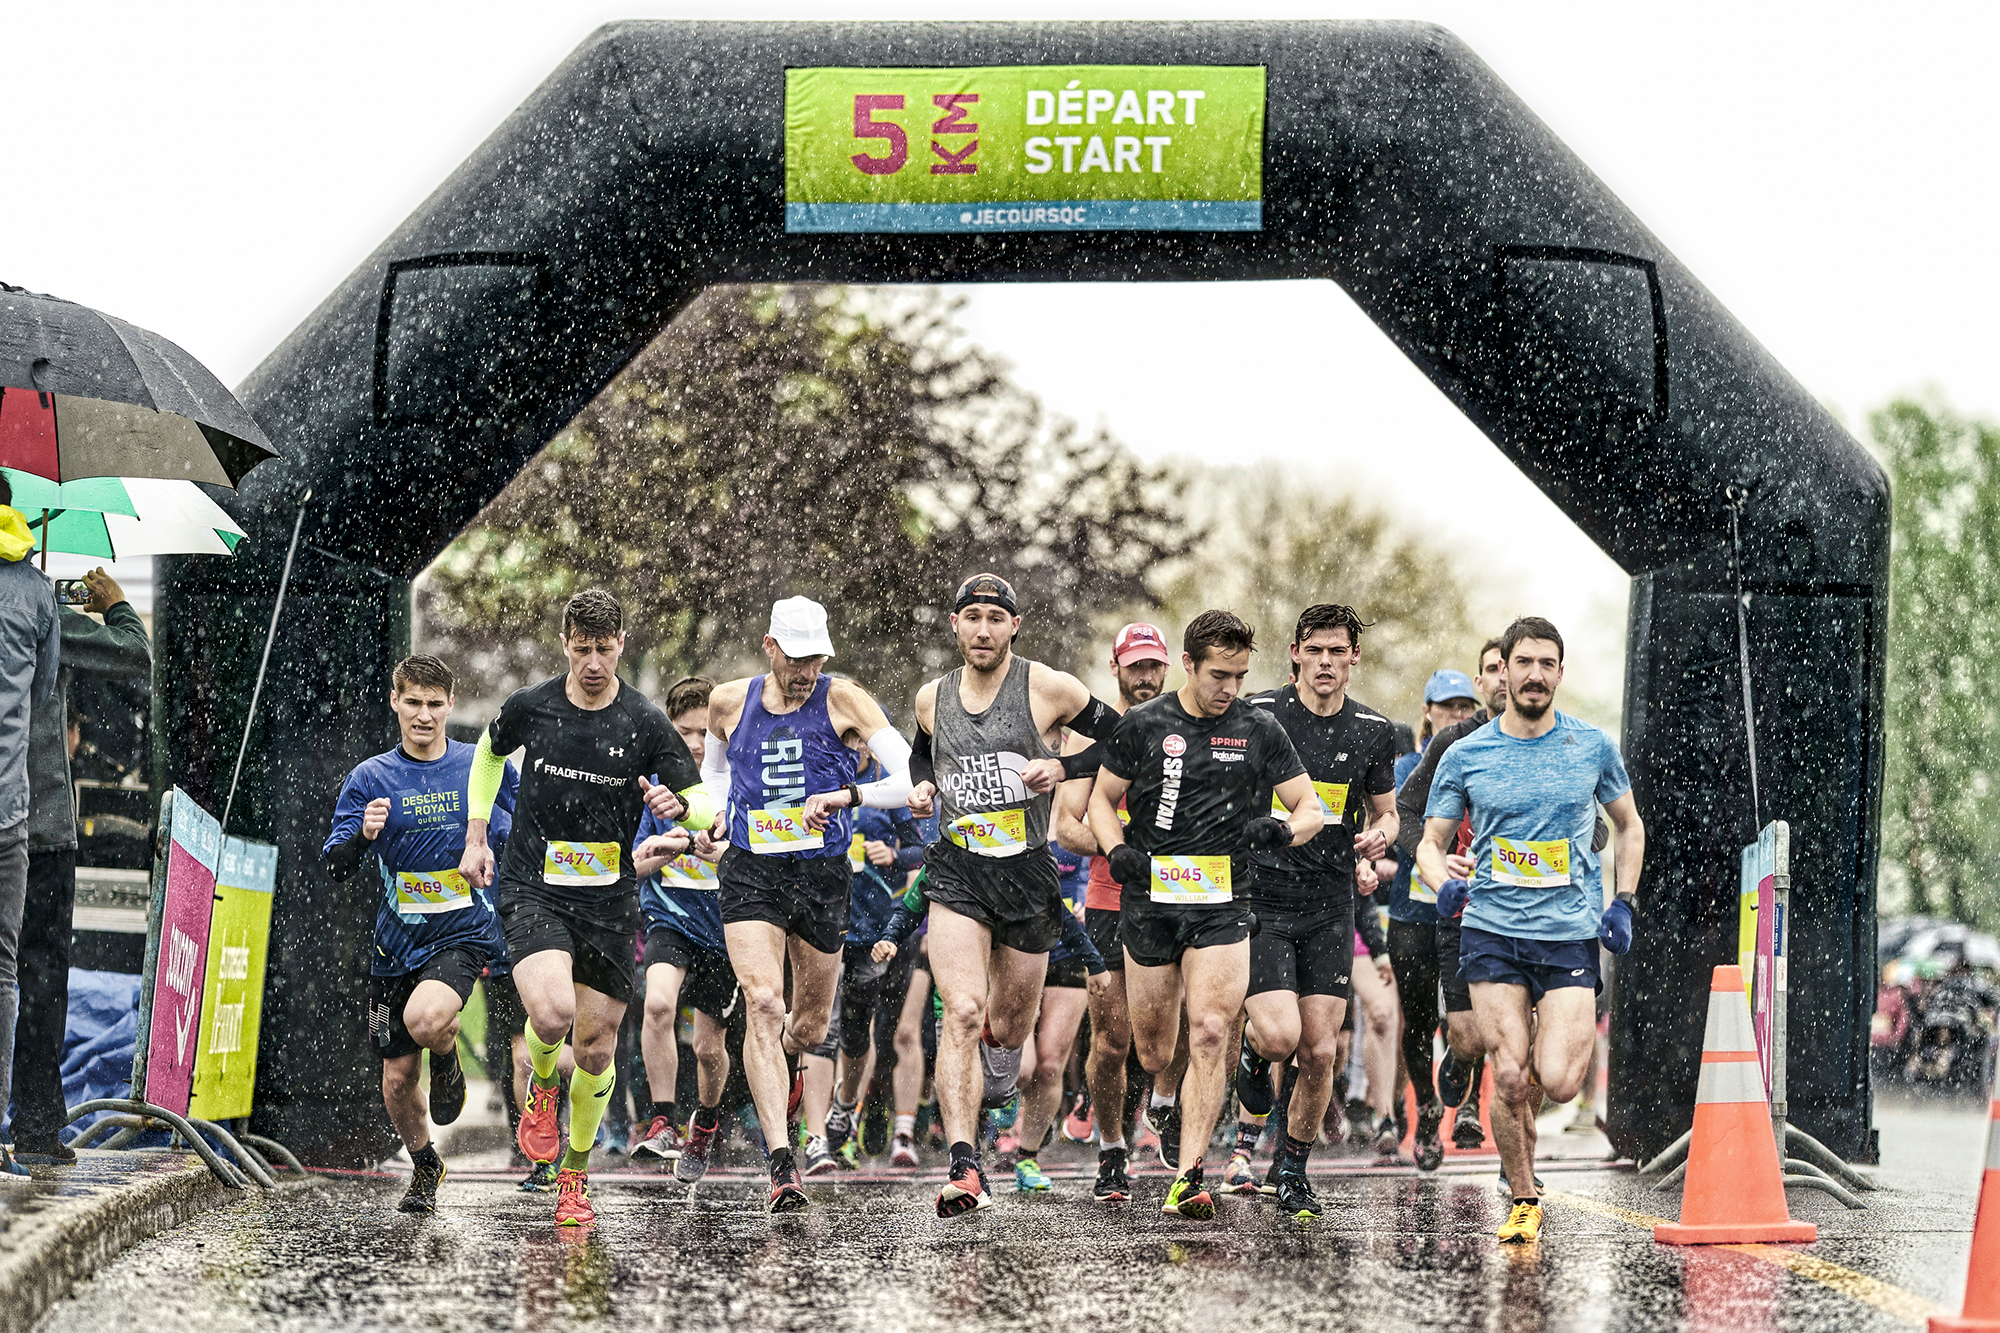 MicheleGrenierPhoto-Runners-in-the-rain-5k-start-line